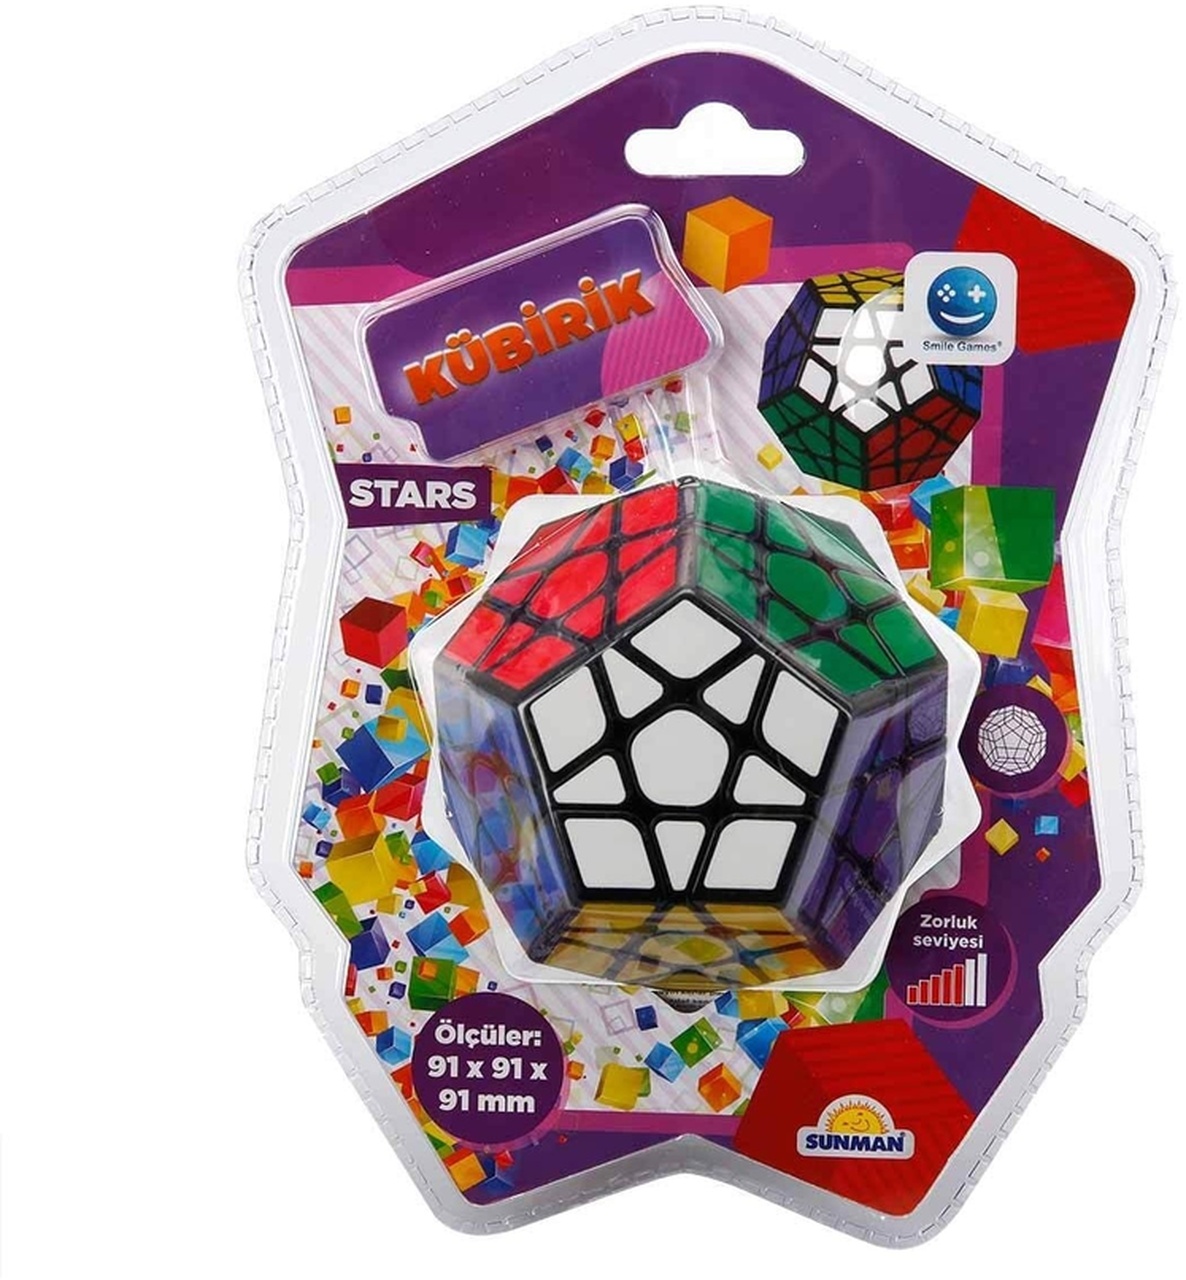 Smile Games Kübirik Stars Megaminx Beşgen Rubik Akıl Ve Zeka Küpü Oyunu